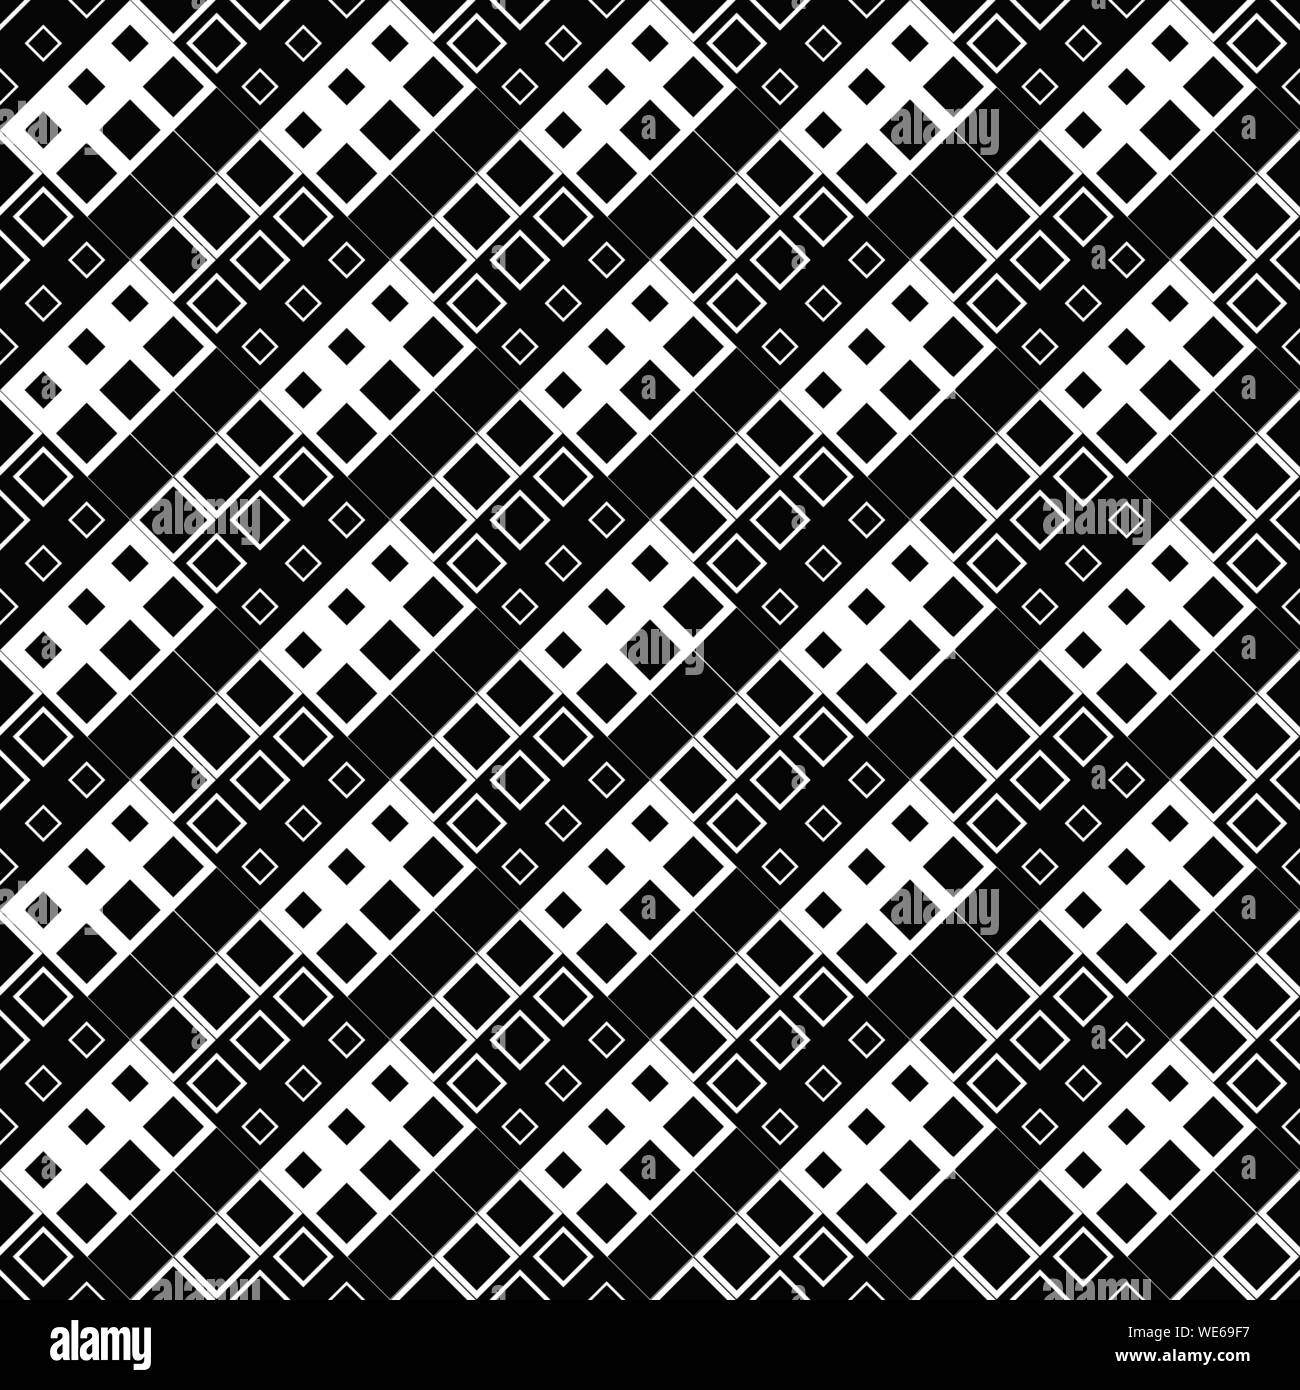 Nahtlose quadratischen Muster Hintergrund - Geometrische wiederholen abstrakte schwarze und weiße Vector Graphic Design von Plätzen Stock Vektor